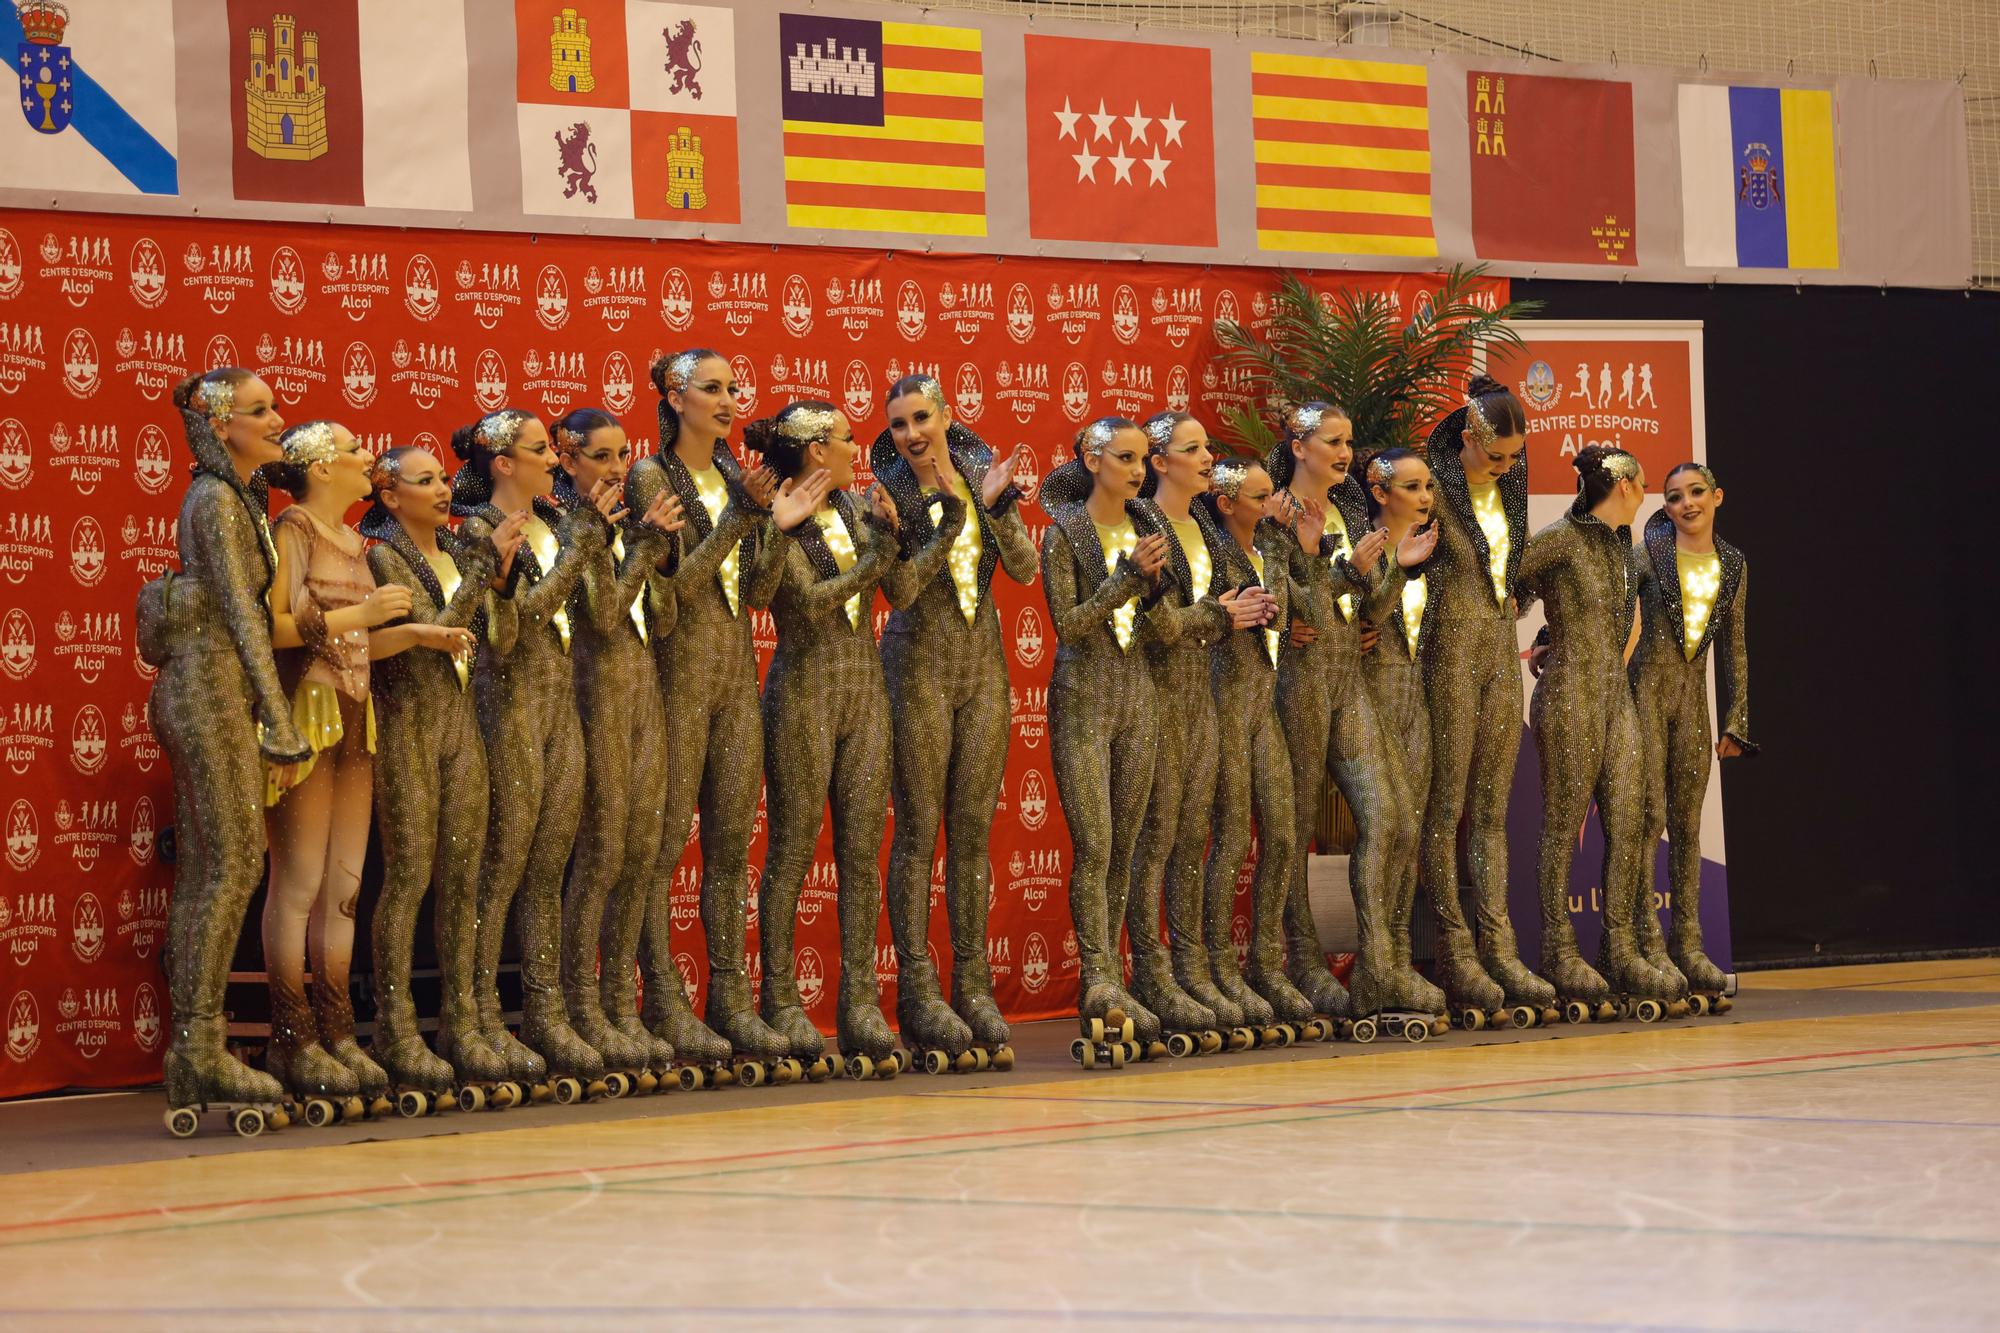 XI Campeonato de España de patinaje artístico Show junior